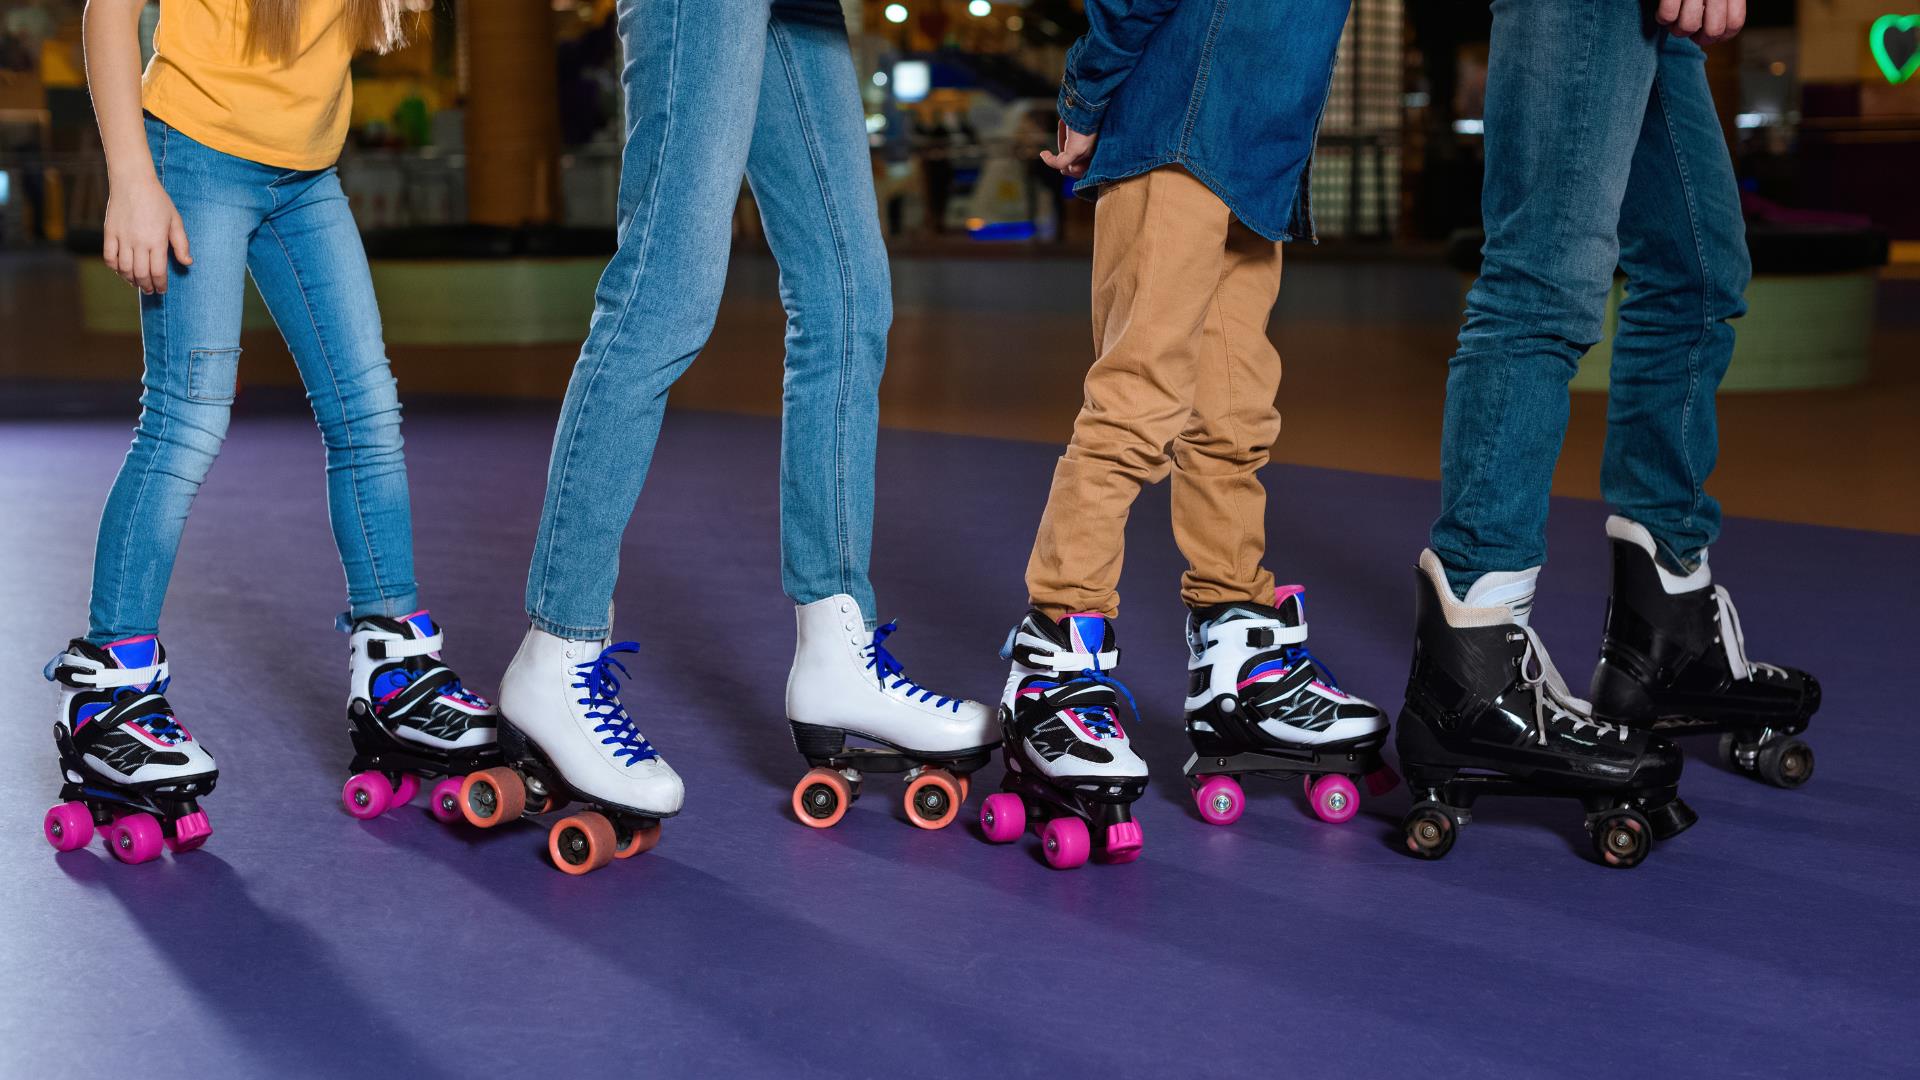 Four children roller skating